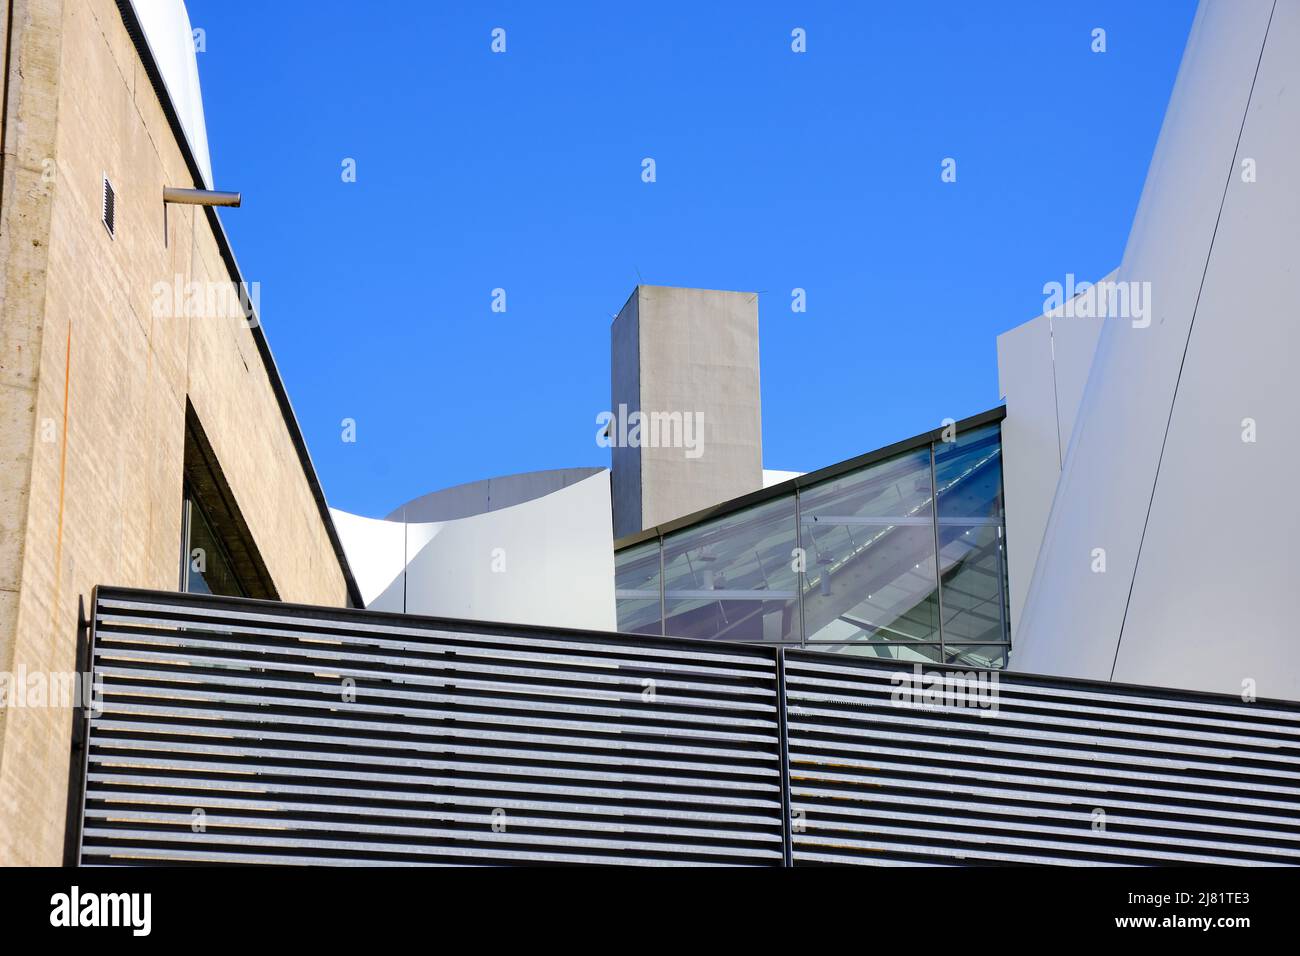 Città anseatica di Stralsund, Meclemburgo-Pomerania occidentale, Germania: Sezione del tetto dell'Ozeaneum del Museo Oceanografico Tedesco. Foto Stock